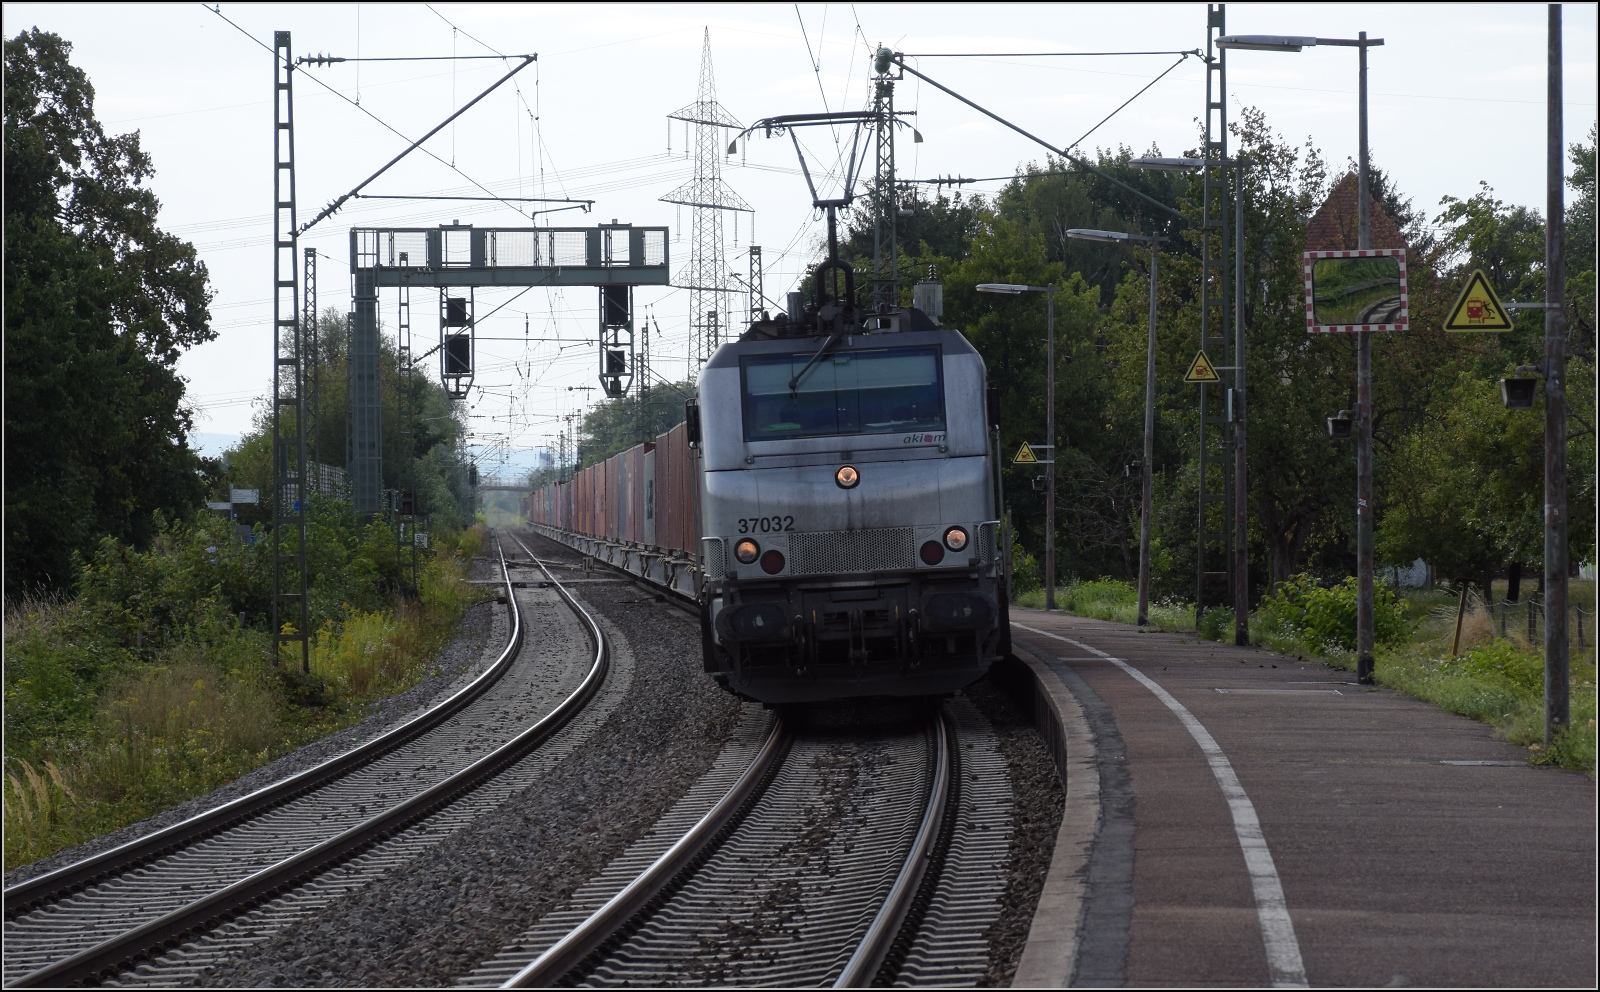 Europabahn.

Die Französin BB 37032 von Akiem kann das Linksfahren auch in Deutschland nicht lassen. Kork, August 2022.